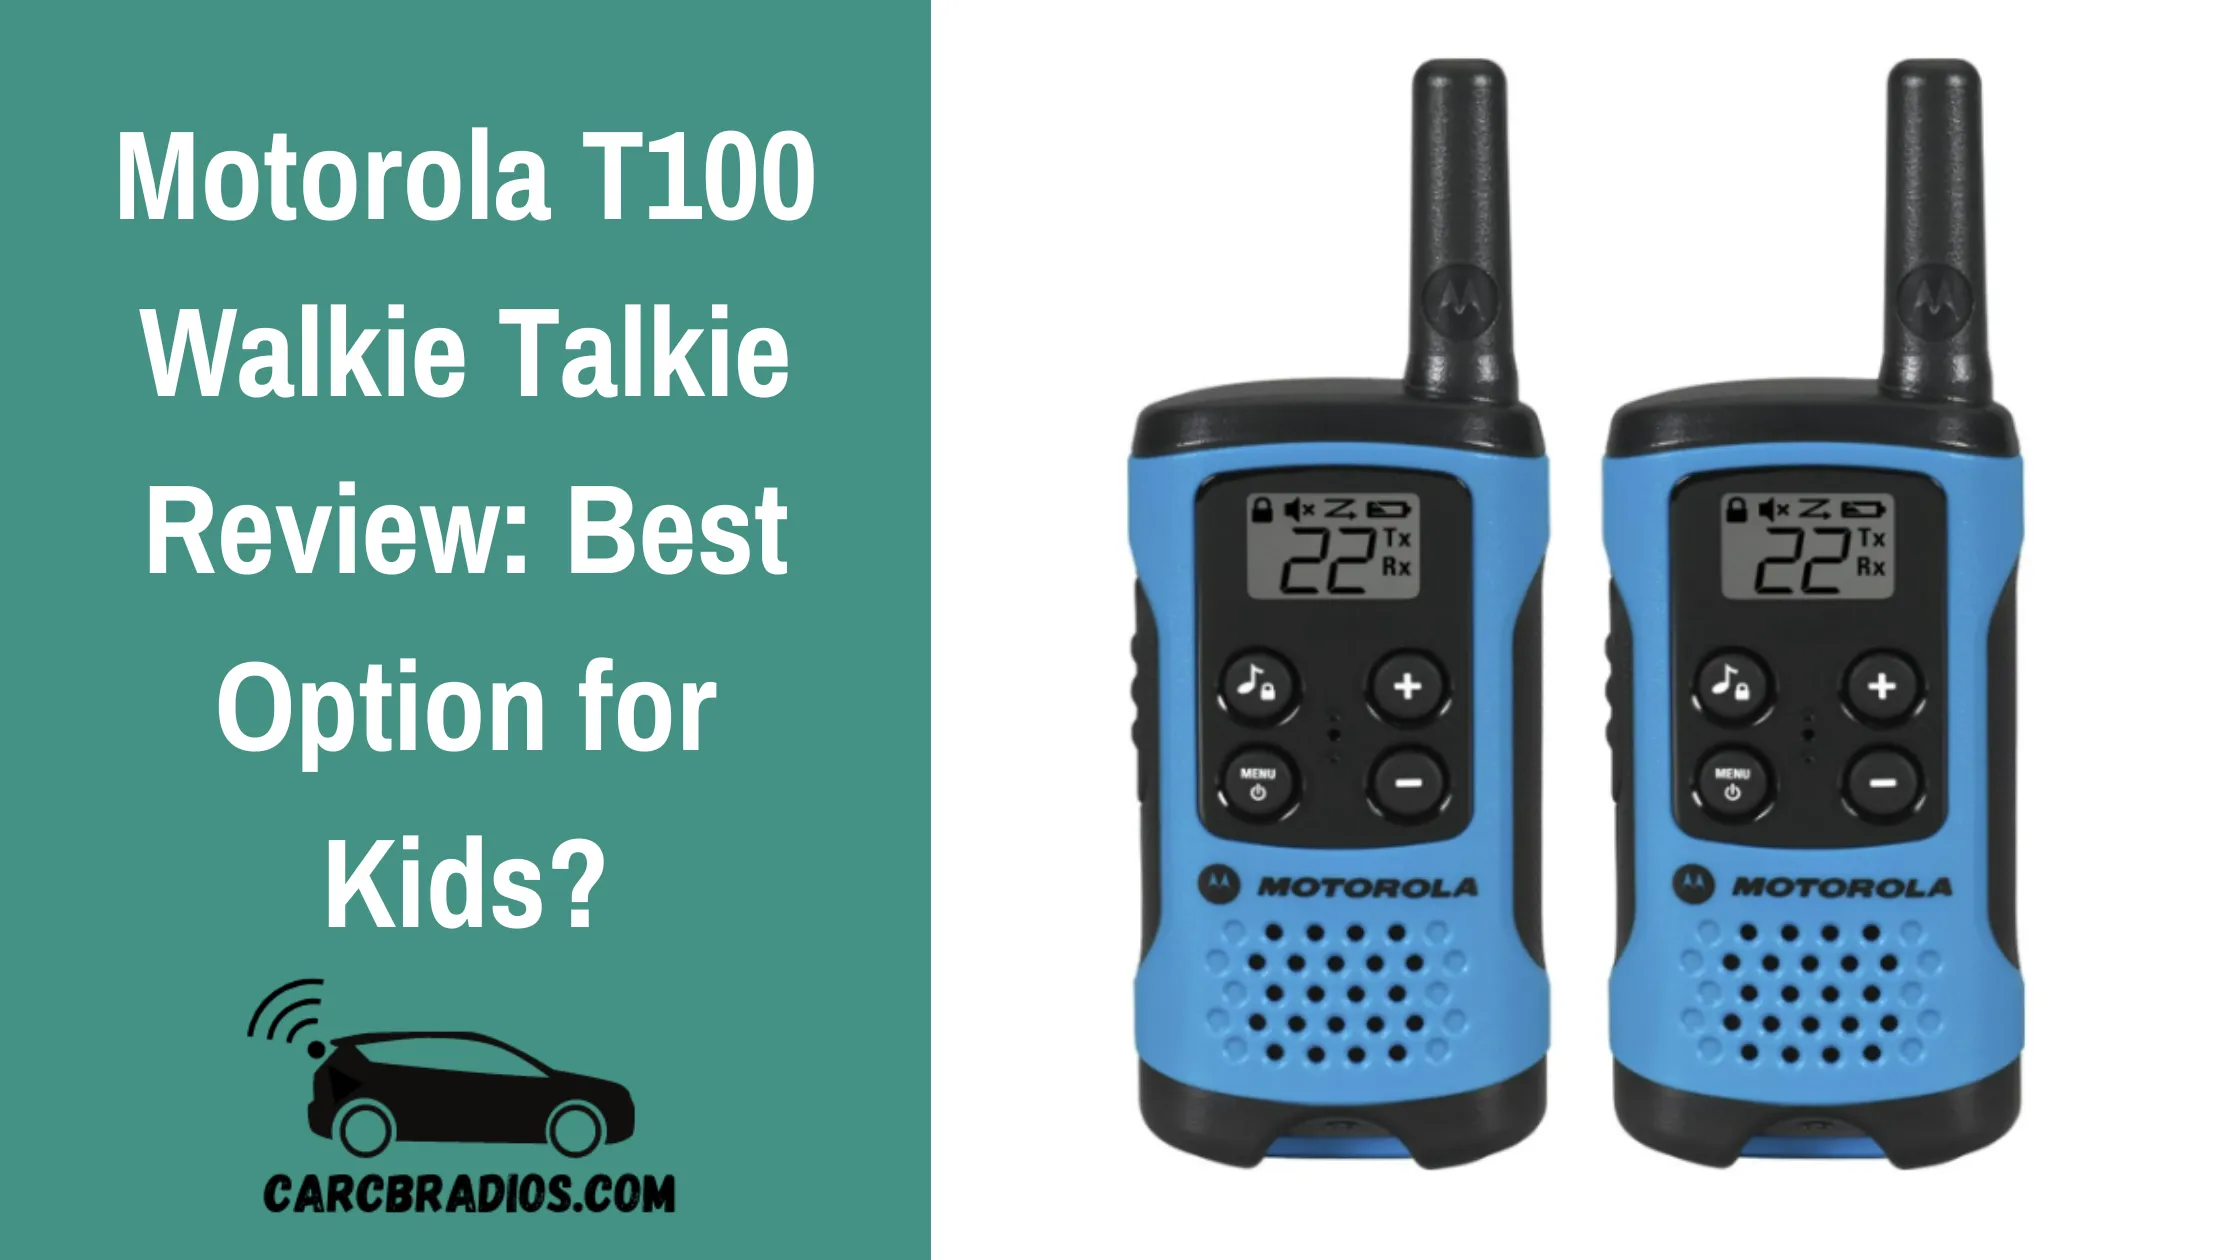 Motorola T100 Walkie Talkie Review: Best Option for Kids?